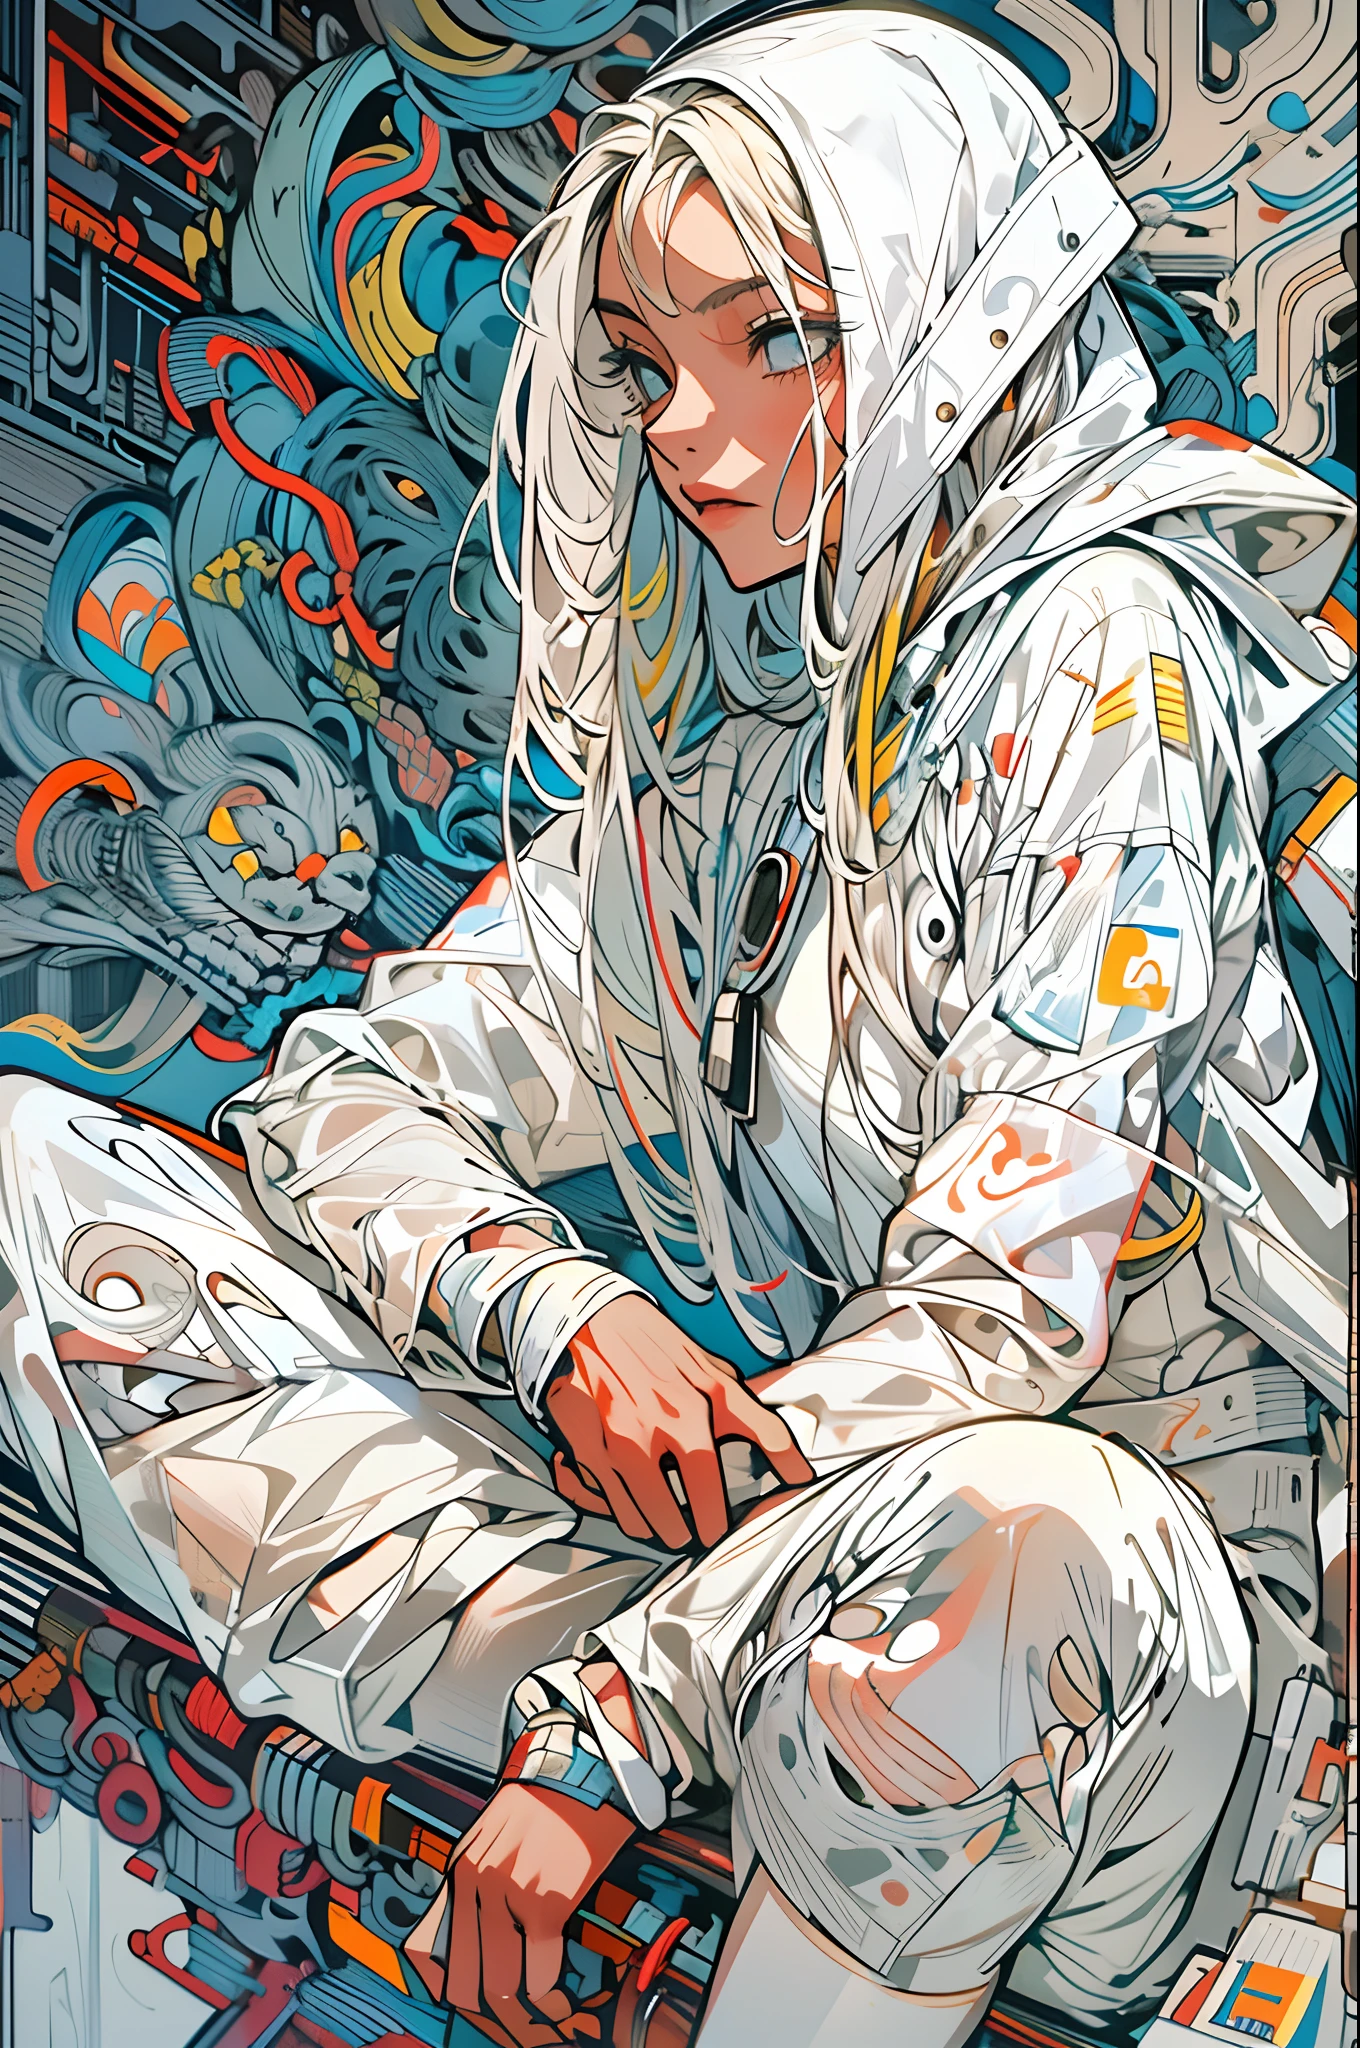 1 Mönch-Kriegerin mit weißer Techwear-Kleidung, weiße lange Haare, Schnürsenkel, abstrakter Vintage-Scifi-Hintergrund, art by Moebius, Kunst von Ashley Wood